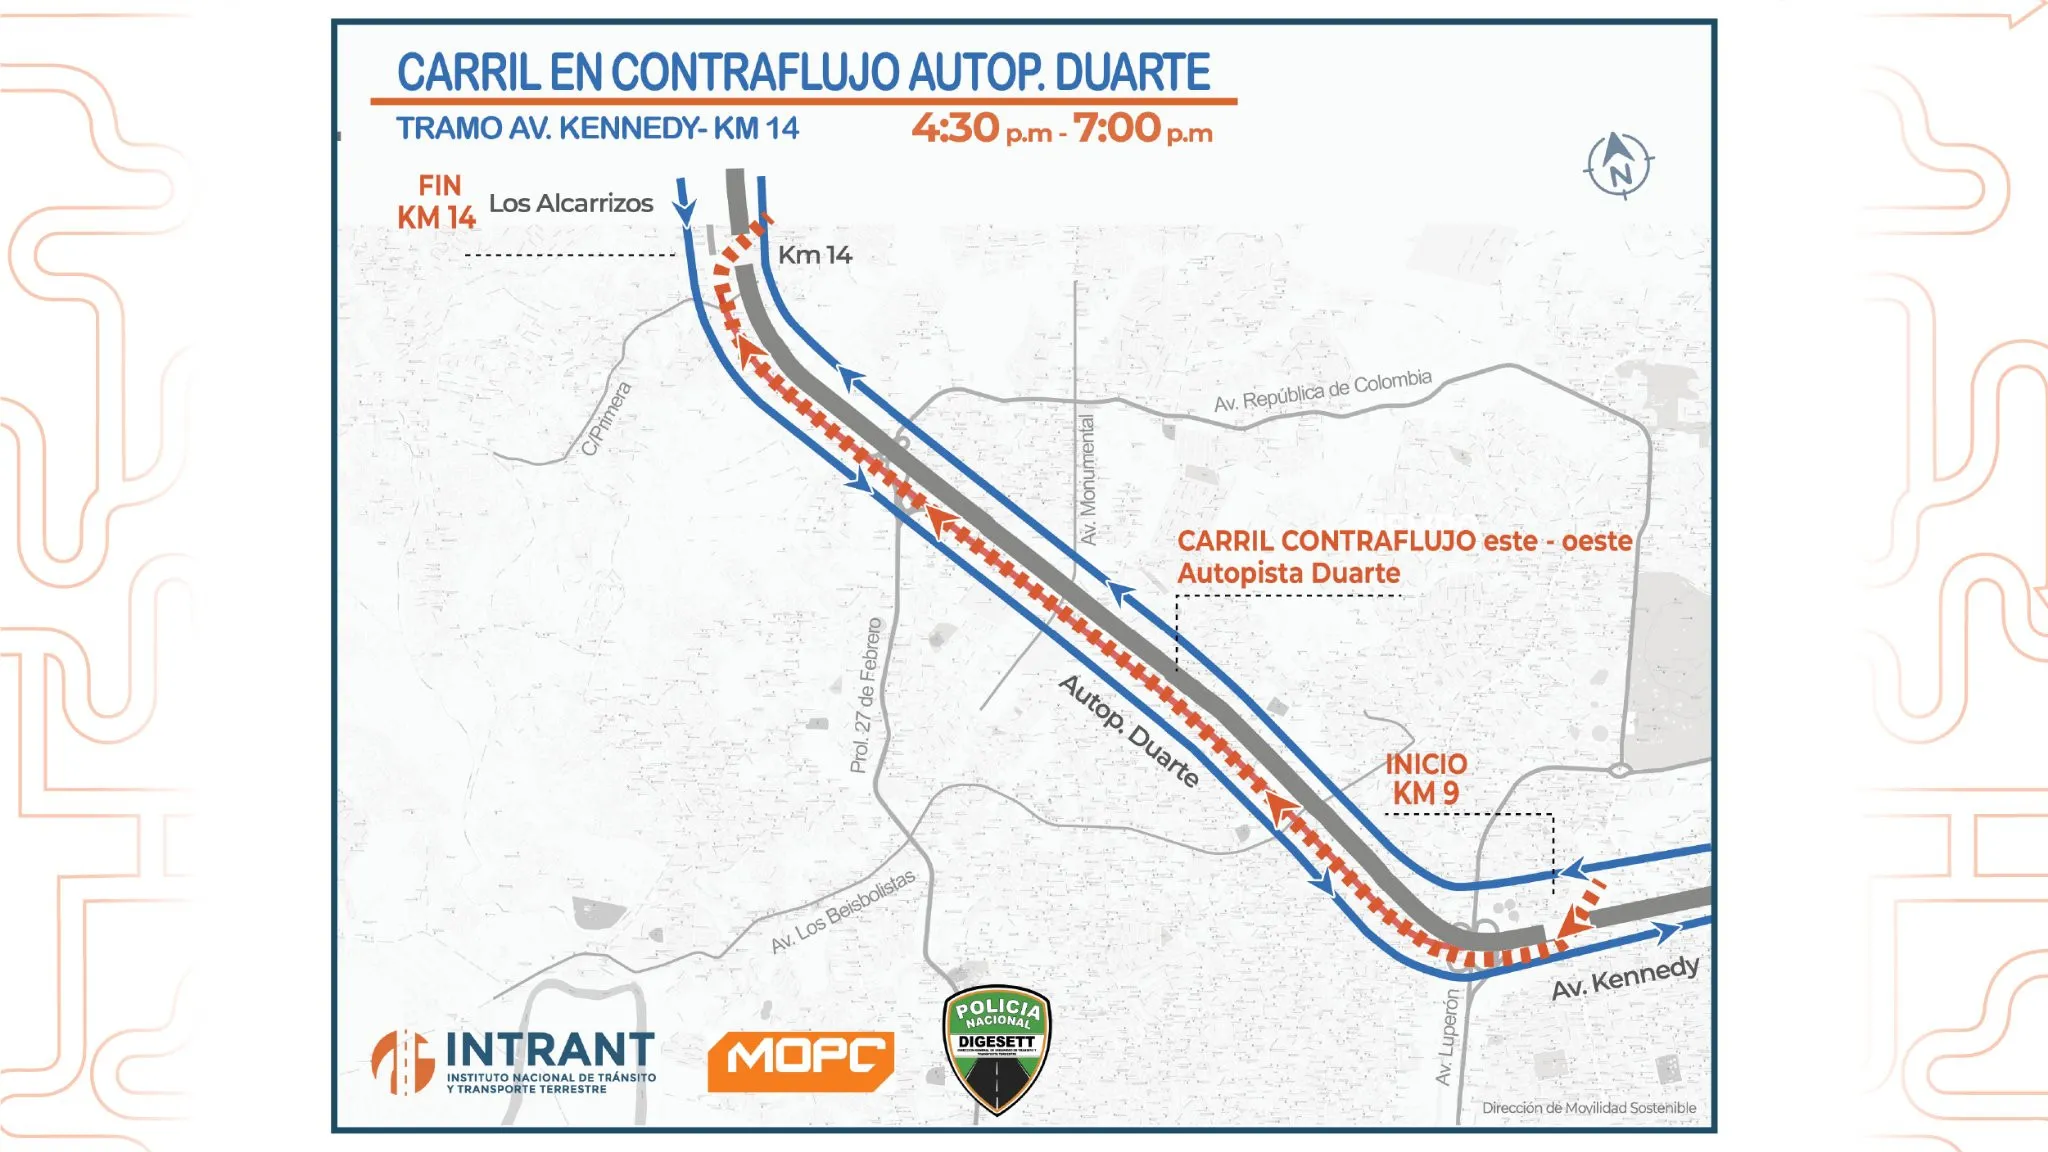 Intrant instalará carril en contraflujo en tramo autopista Duarte- Kennedy